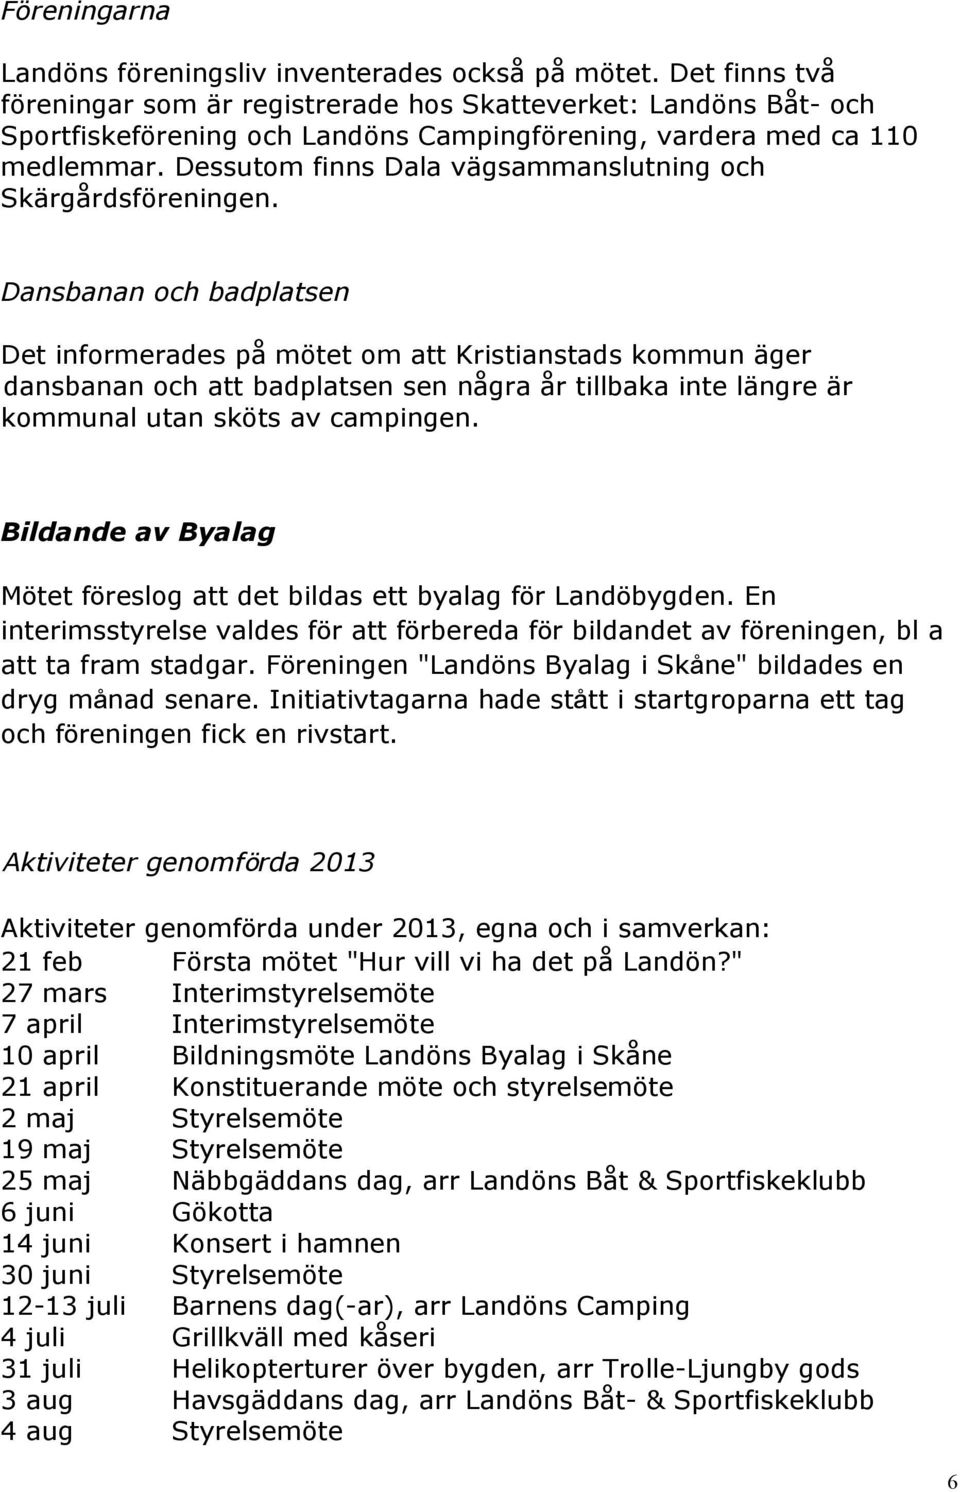 Dessutom finns Dala vägsammanslutning och Skärgårdsföreningen.